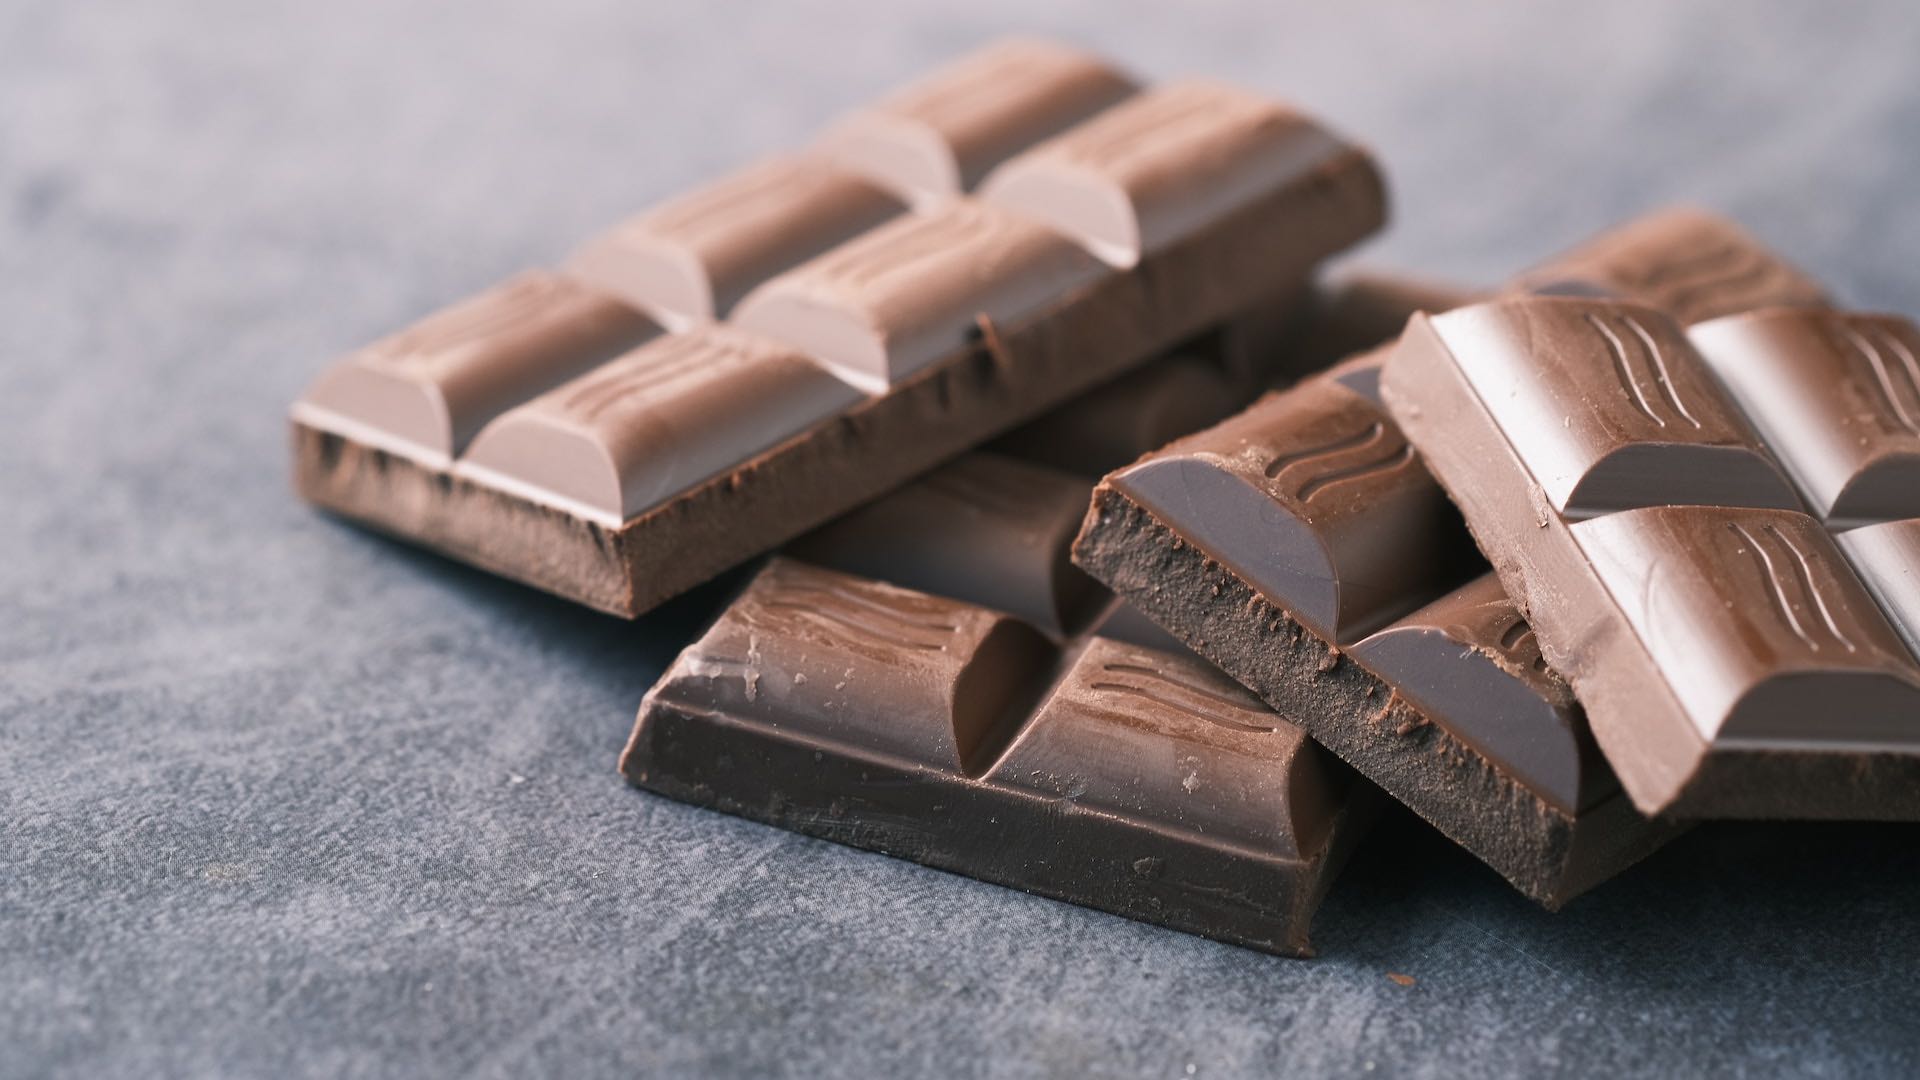 Шоколад - не просто сладость, а прям целебное средство: результаты исследования